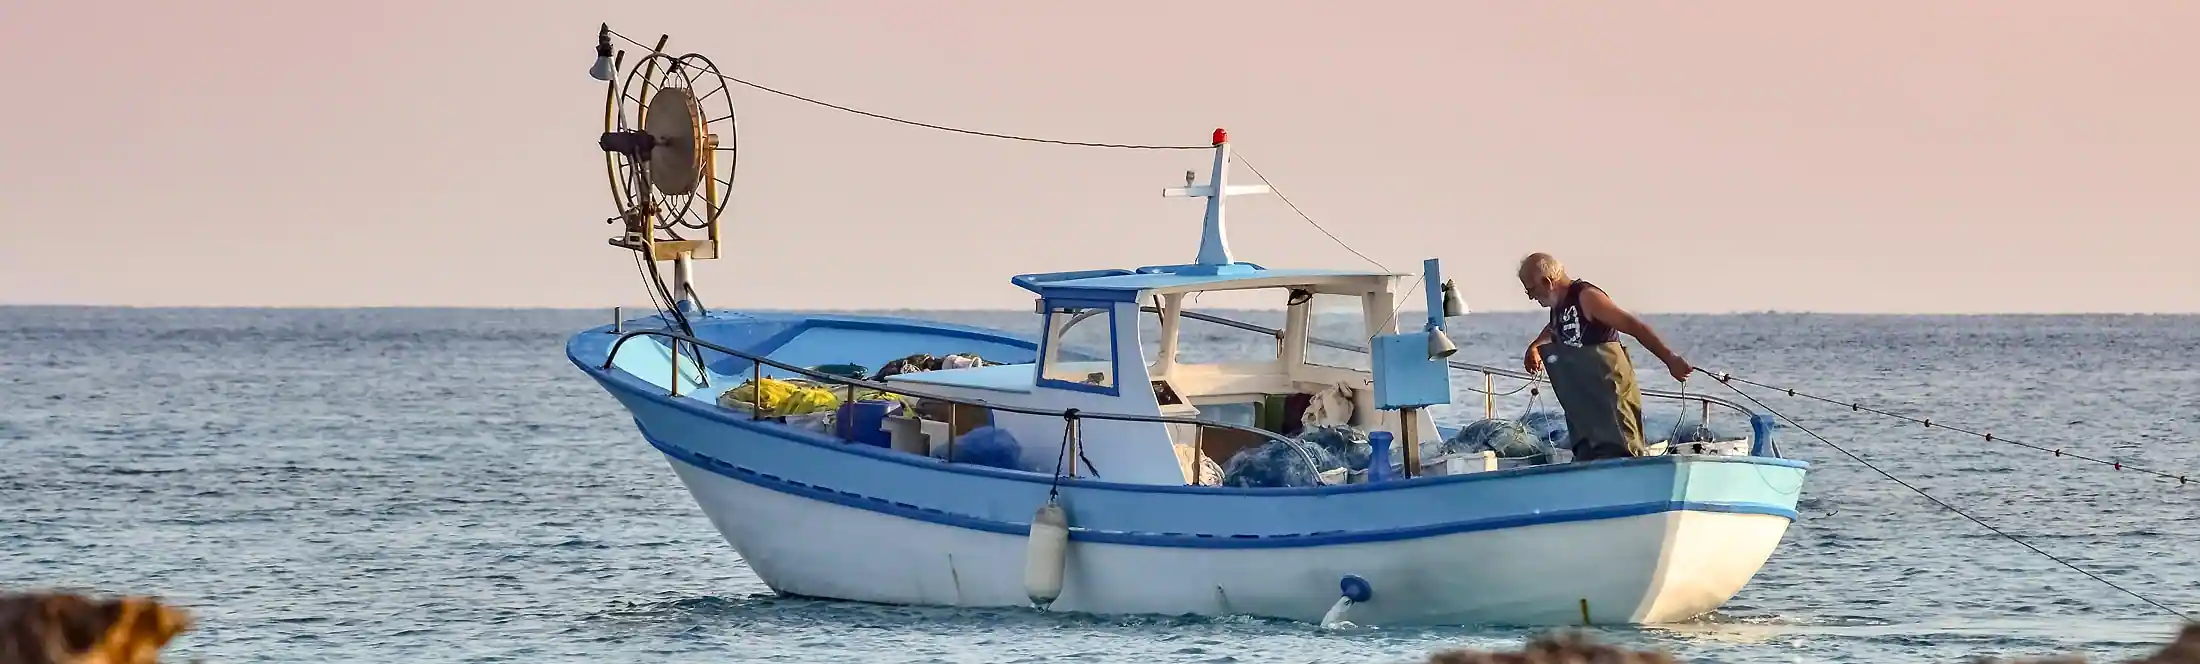 Découvertes d'un bateau de pêcheur pendant la classe de mer "les métiers de la mer"